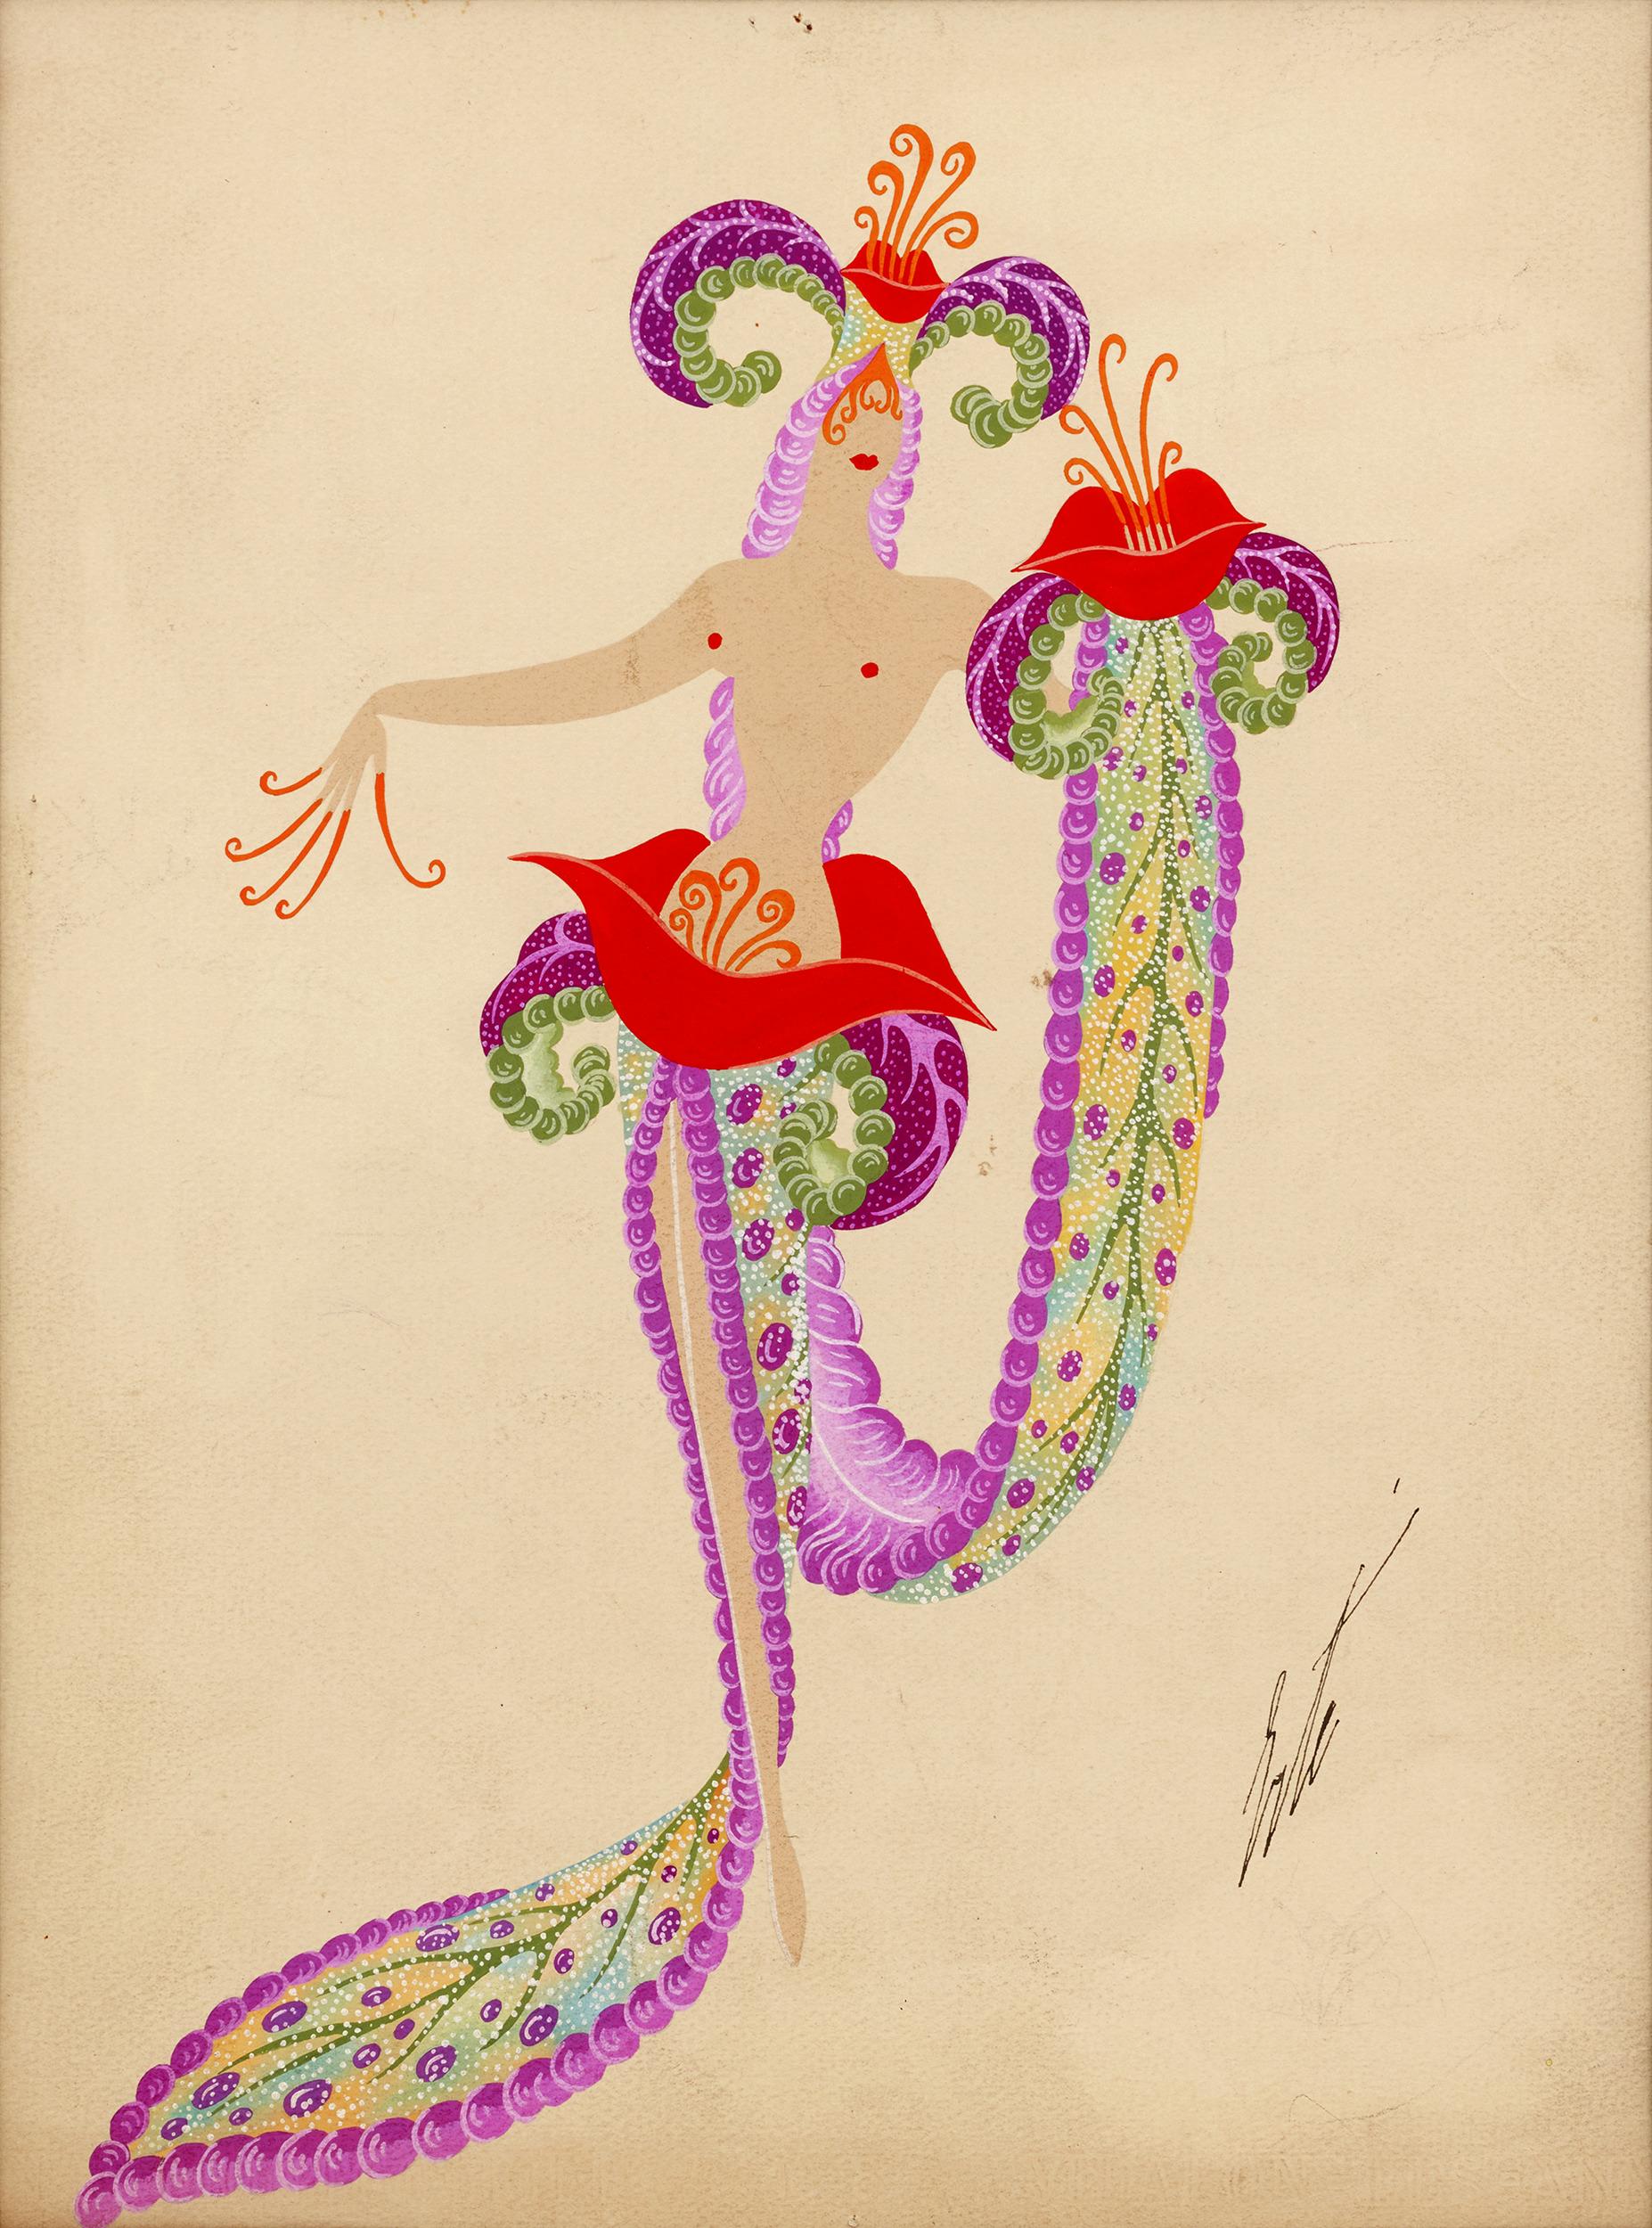 Erté (Romain de Tirtoff)
1892-1990  Russian-French
Fleurs du Mal(The Flowers of Evil)

Signed 